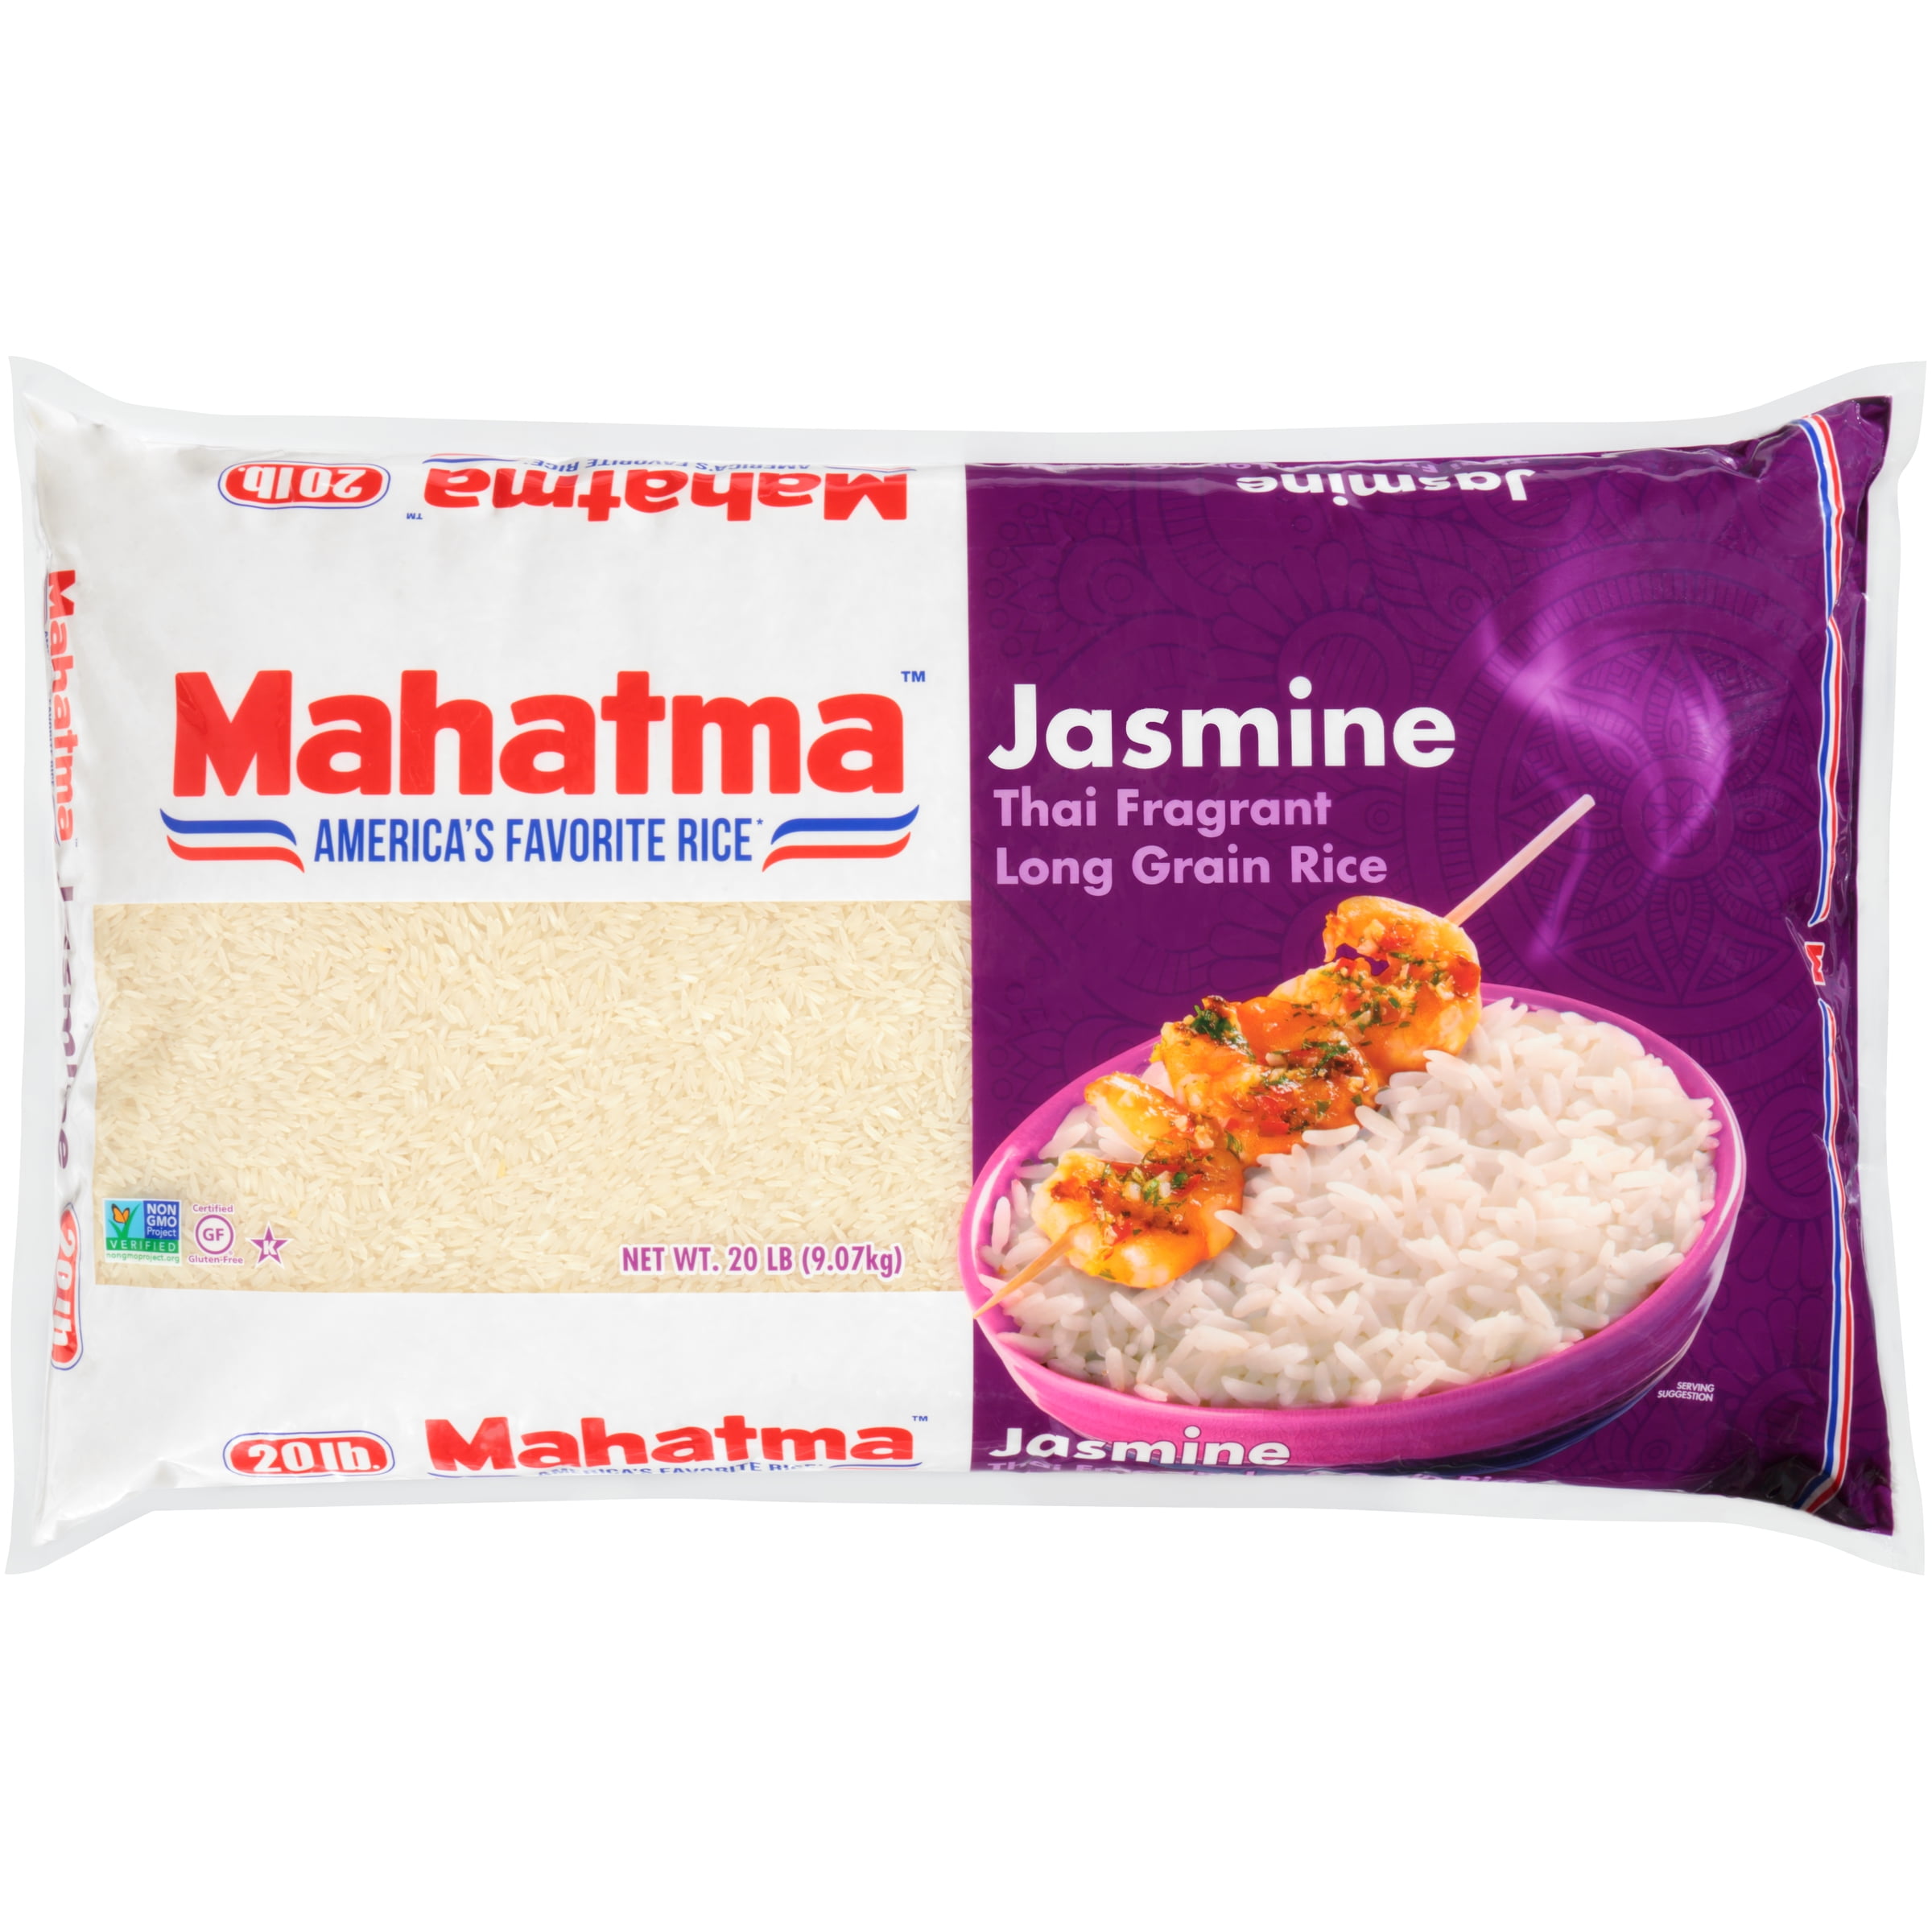 Details more than 118 mahatma rice 20 lb bag latest - kidsdream.edu.vn